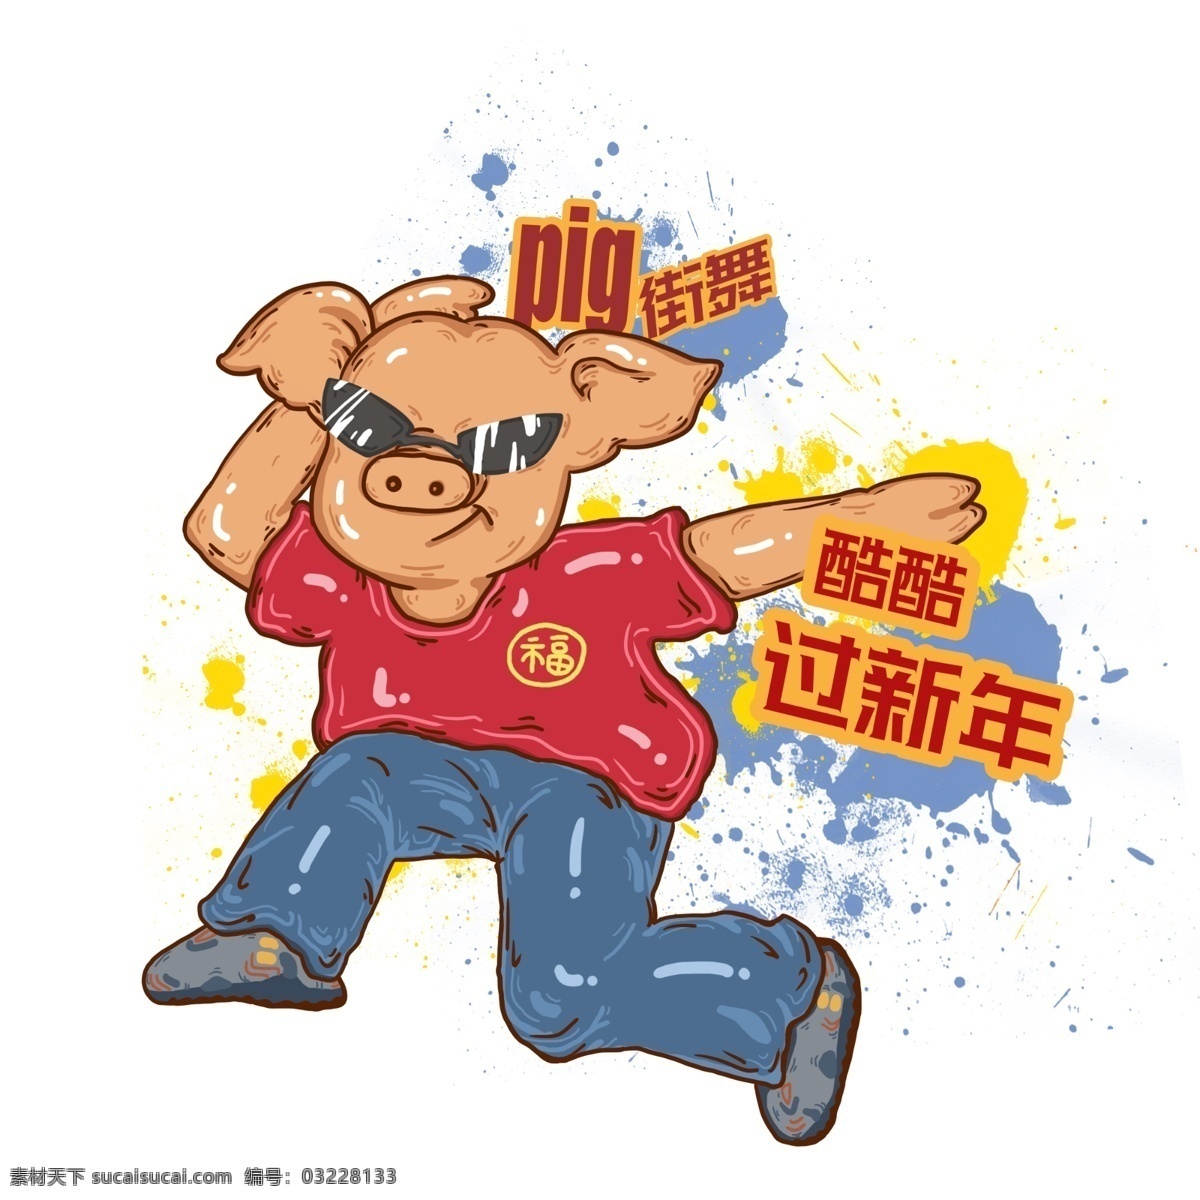 2019 年 农历 新年 街舞 小 猪 免 抠 图 2019年 农历新年 猪年 春节 街舞小猪 运动小猪 嘻哈小猪 png免抠图